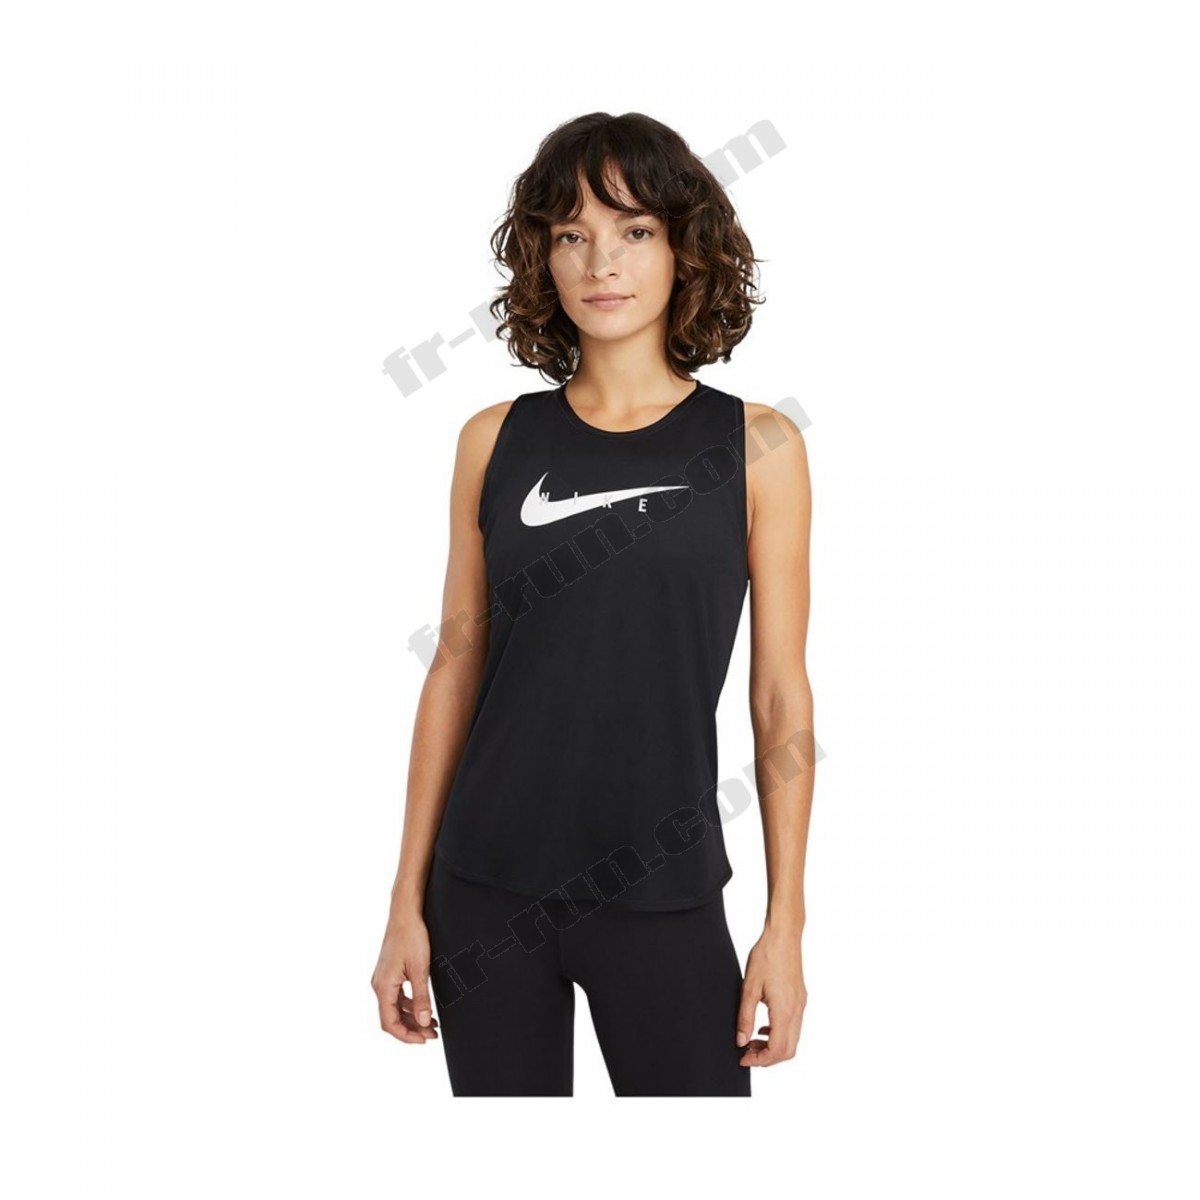 Nike/running femme NIKE Nike Wmns Swoosh Run Top ◇◇◇ Pas Cher Du Tout - -1